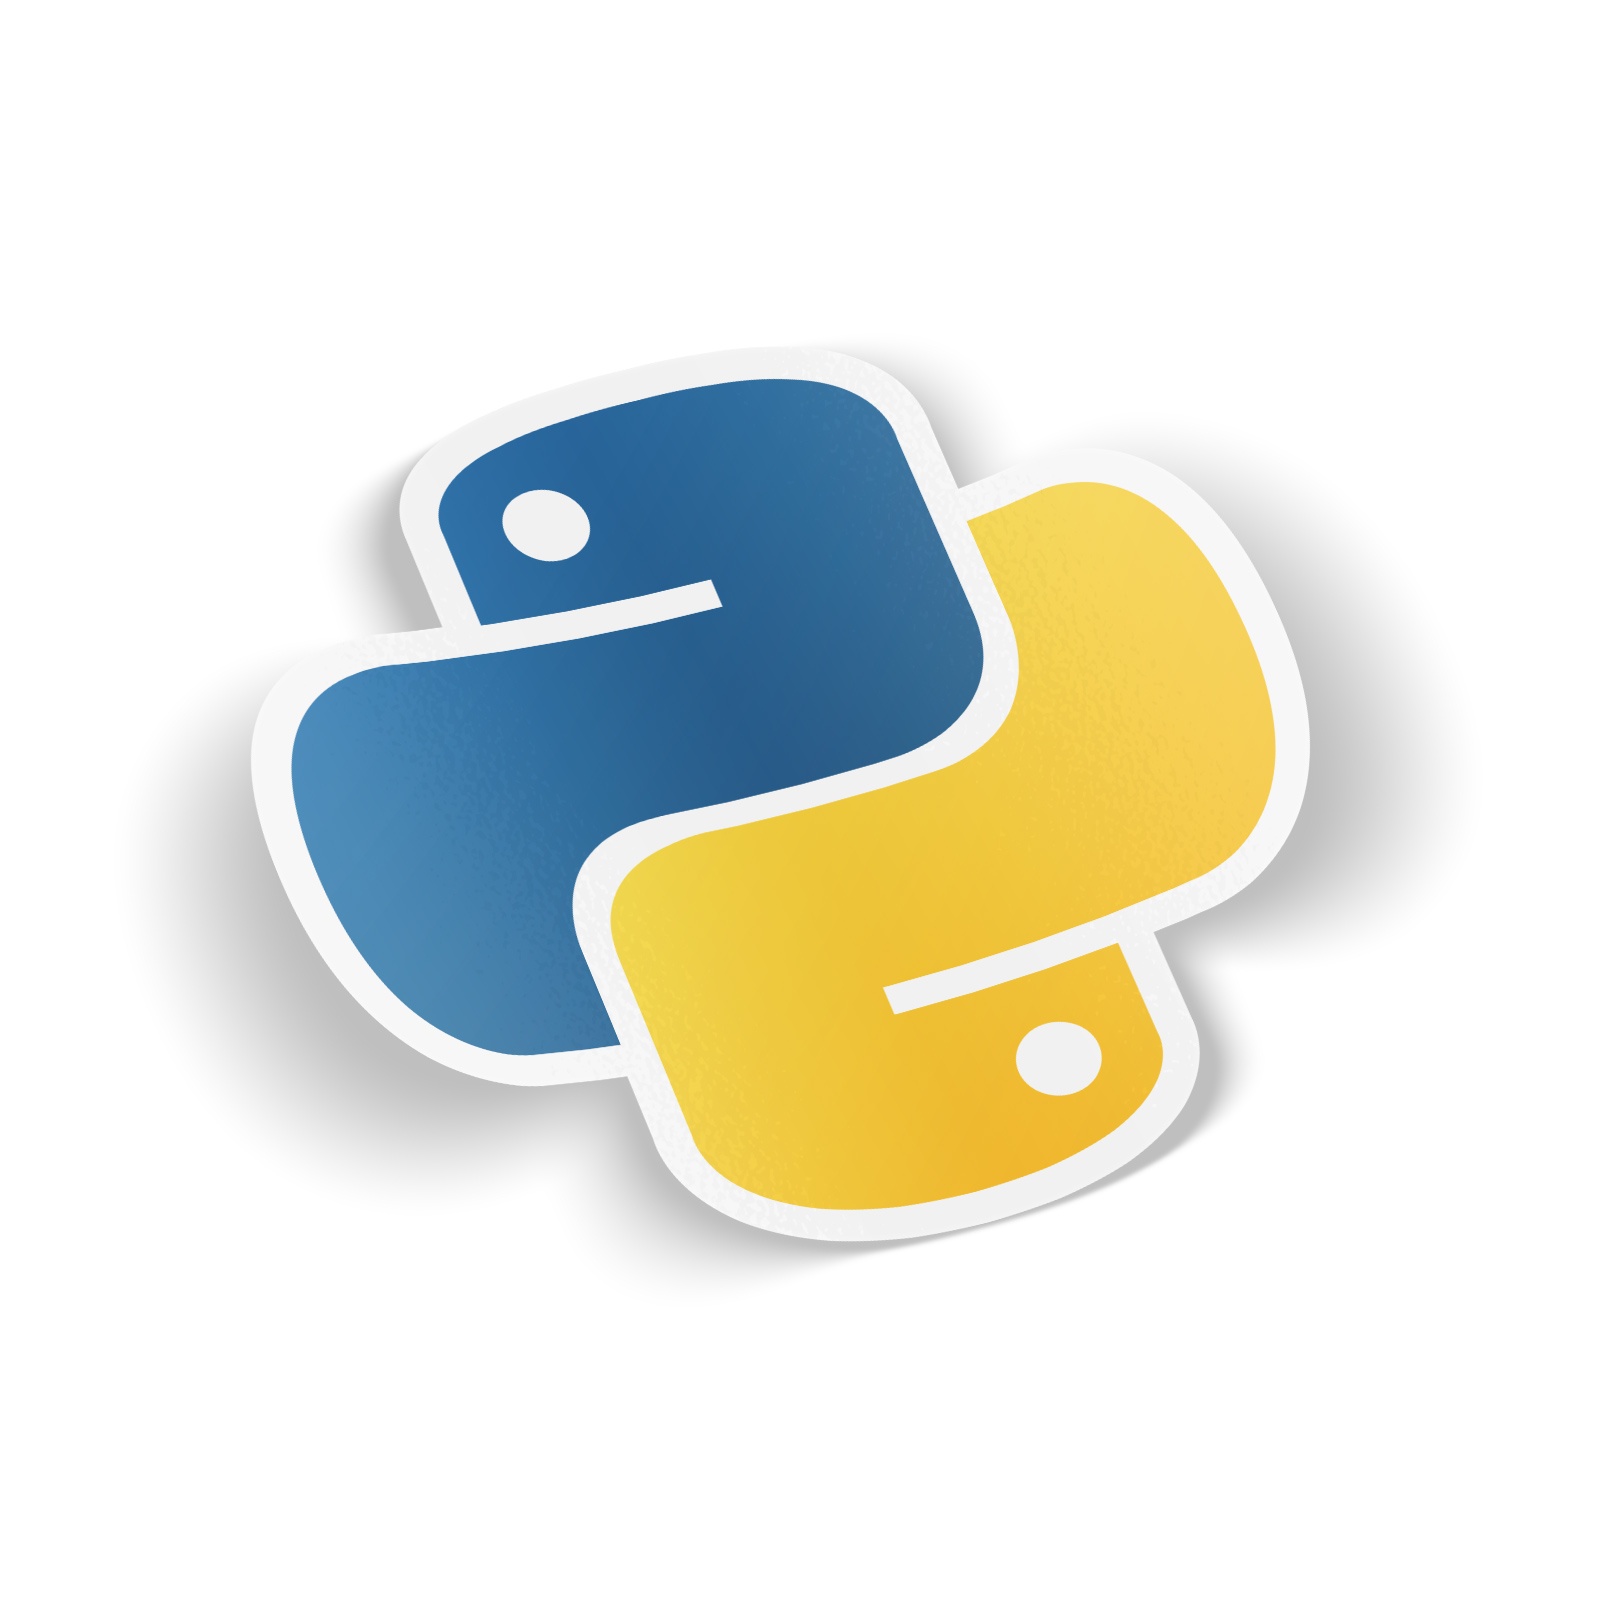 Логотип языка питон. Значок Python. Python язык программирования лого. Язык програмирония пион логотип. Пайтон язык программирования логотип.